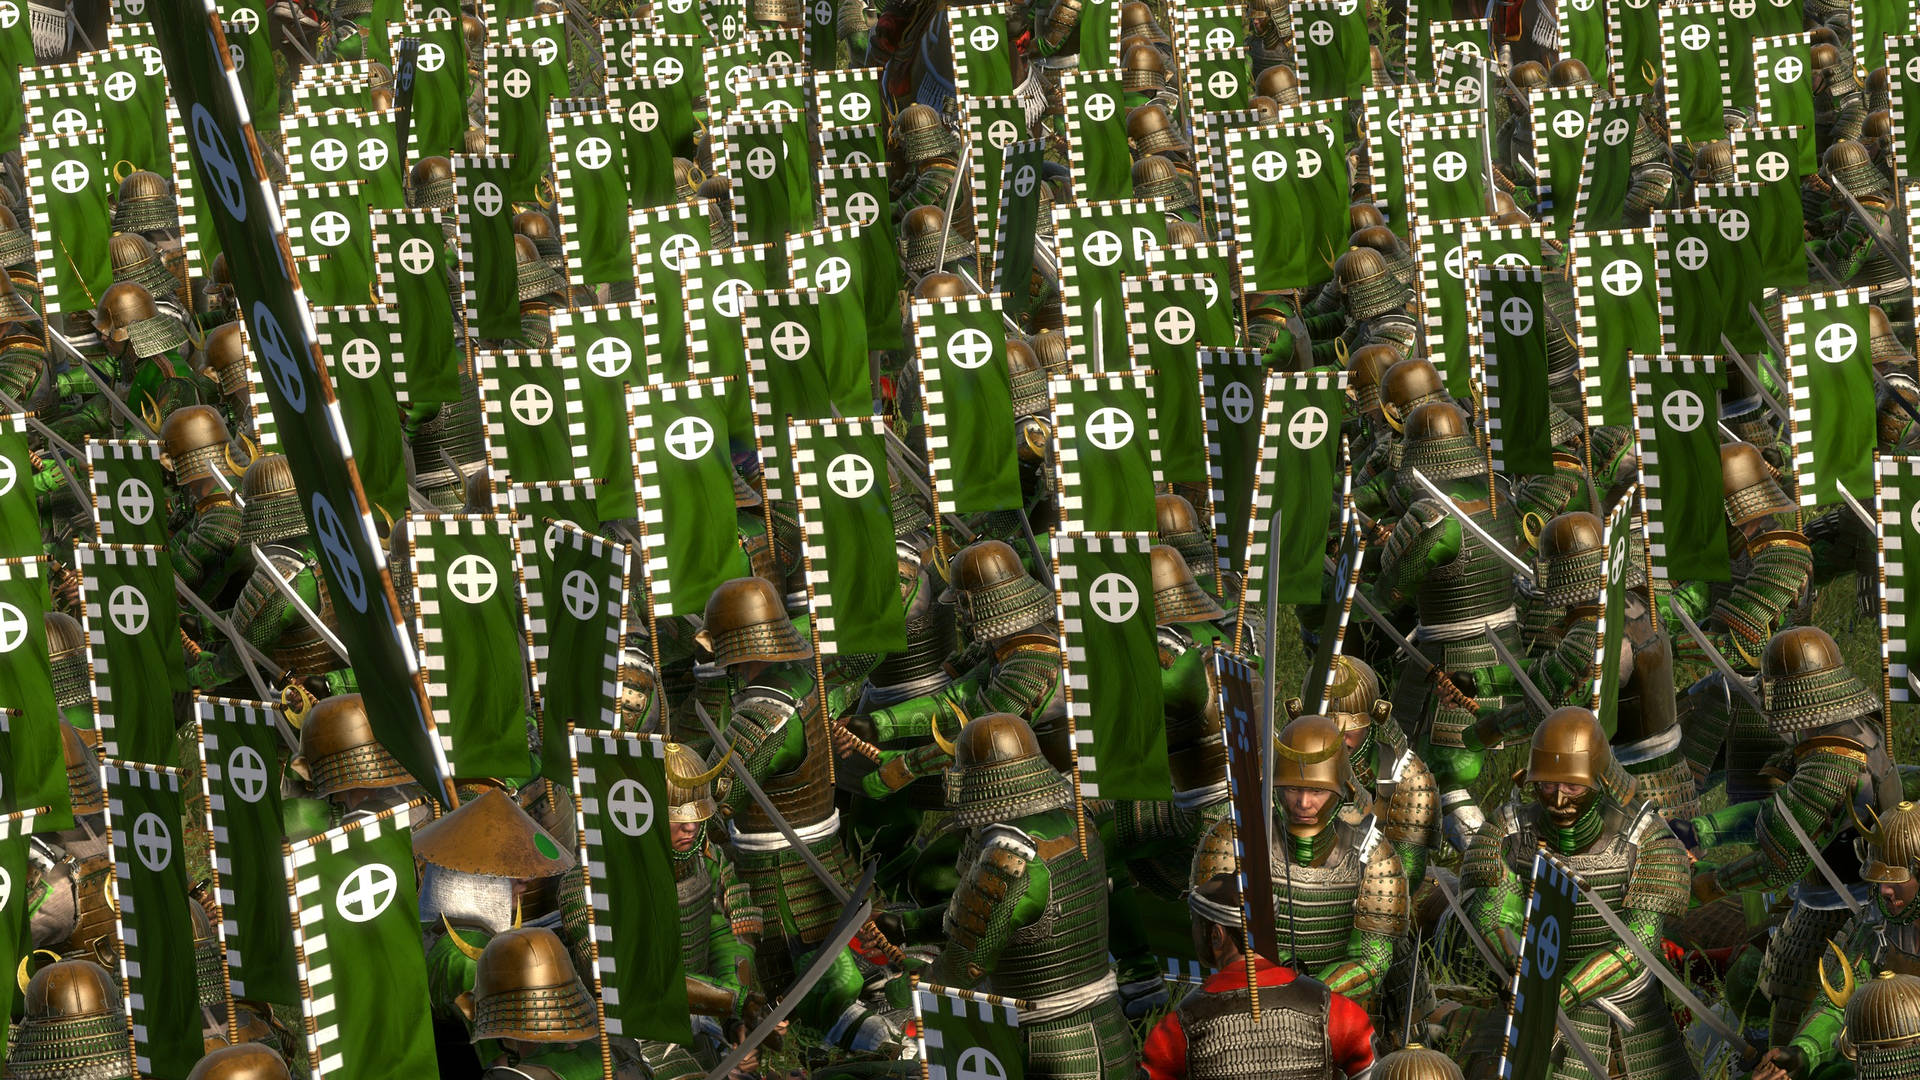 Shogun2 Total War Banderas Verdes. Fondo de pantalla